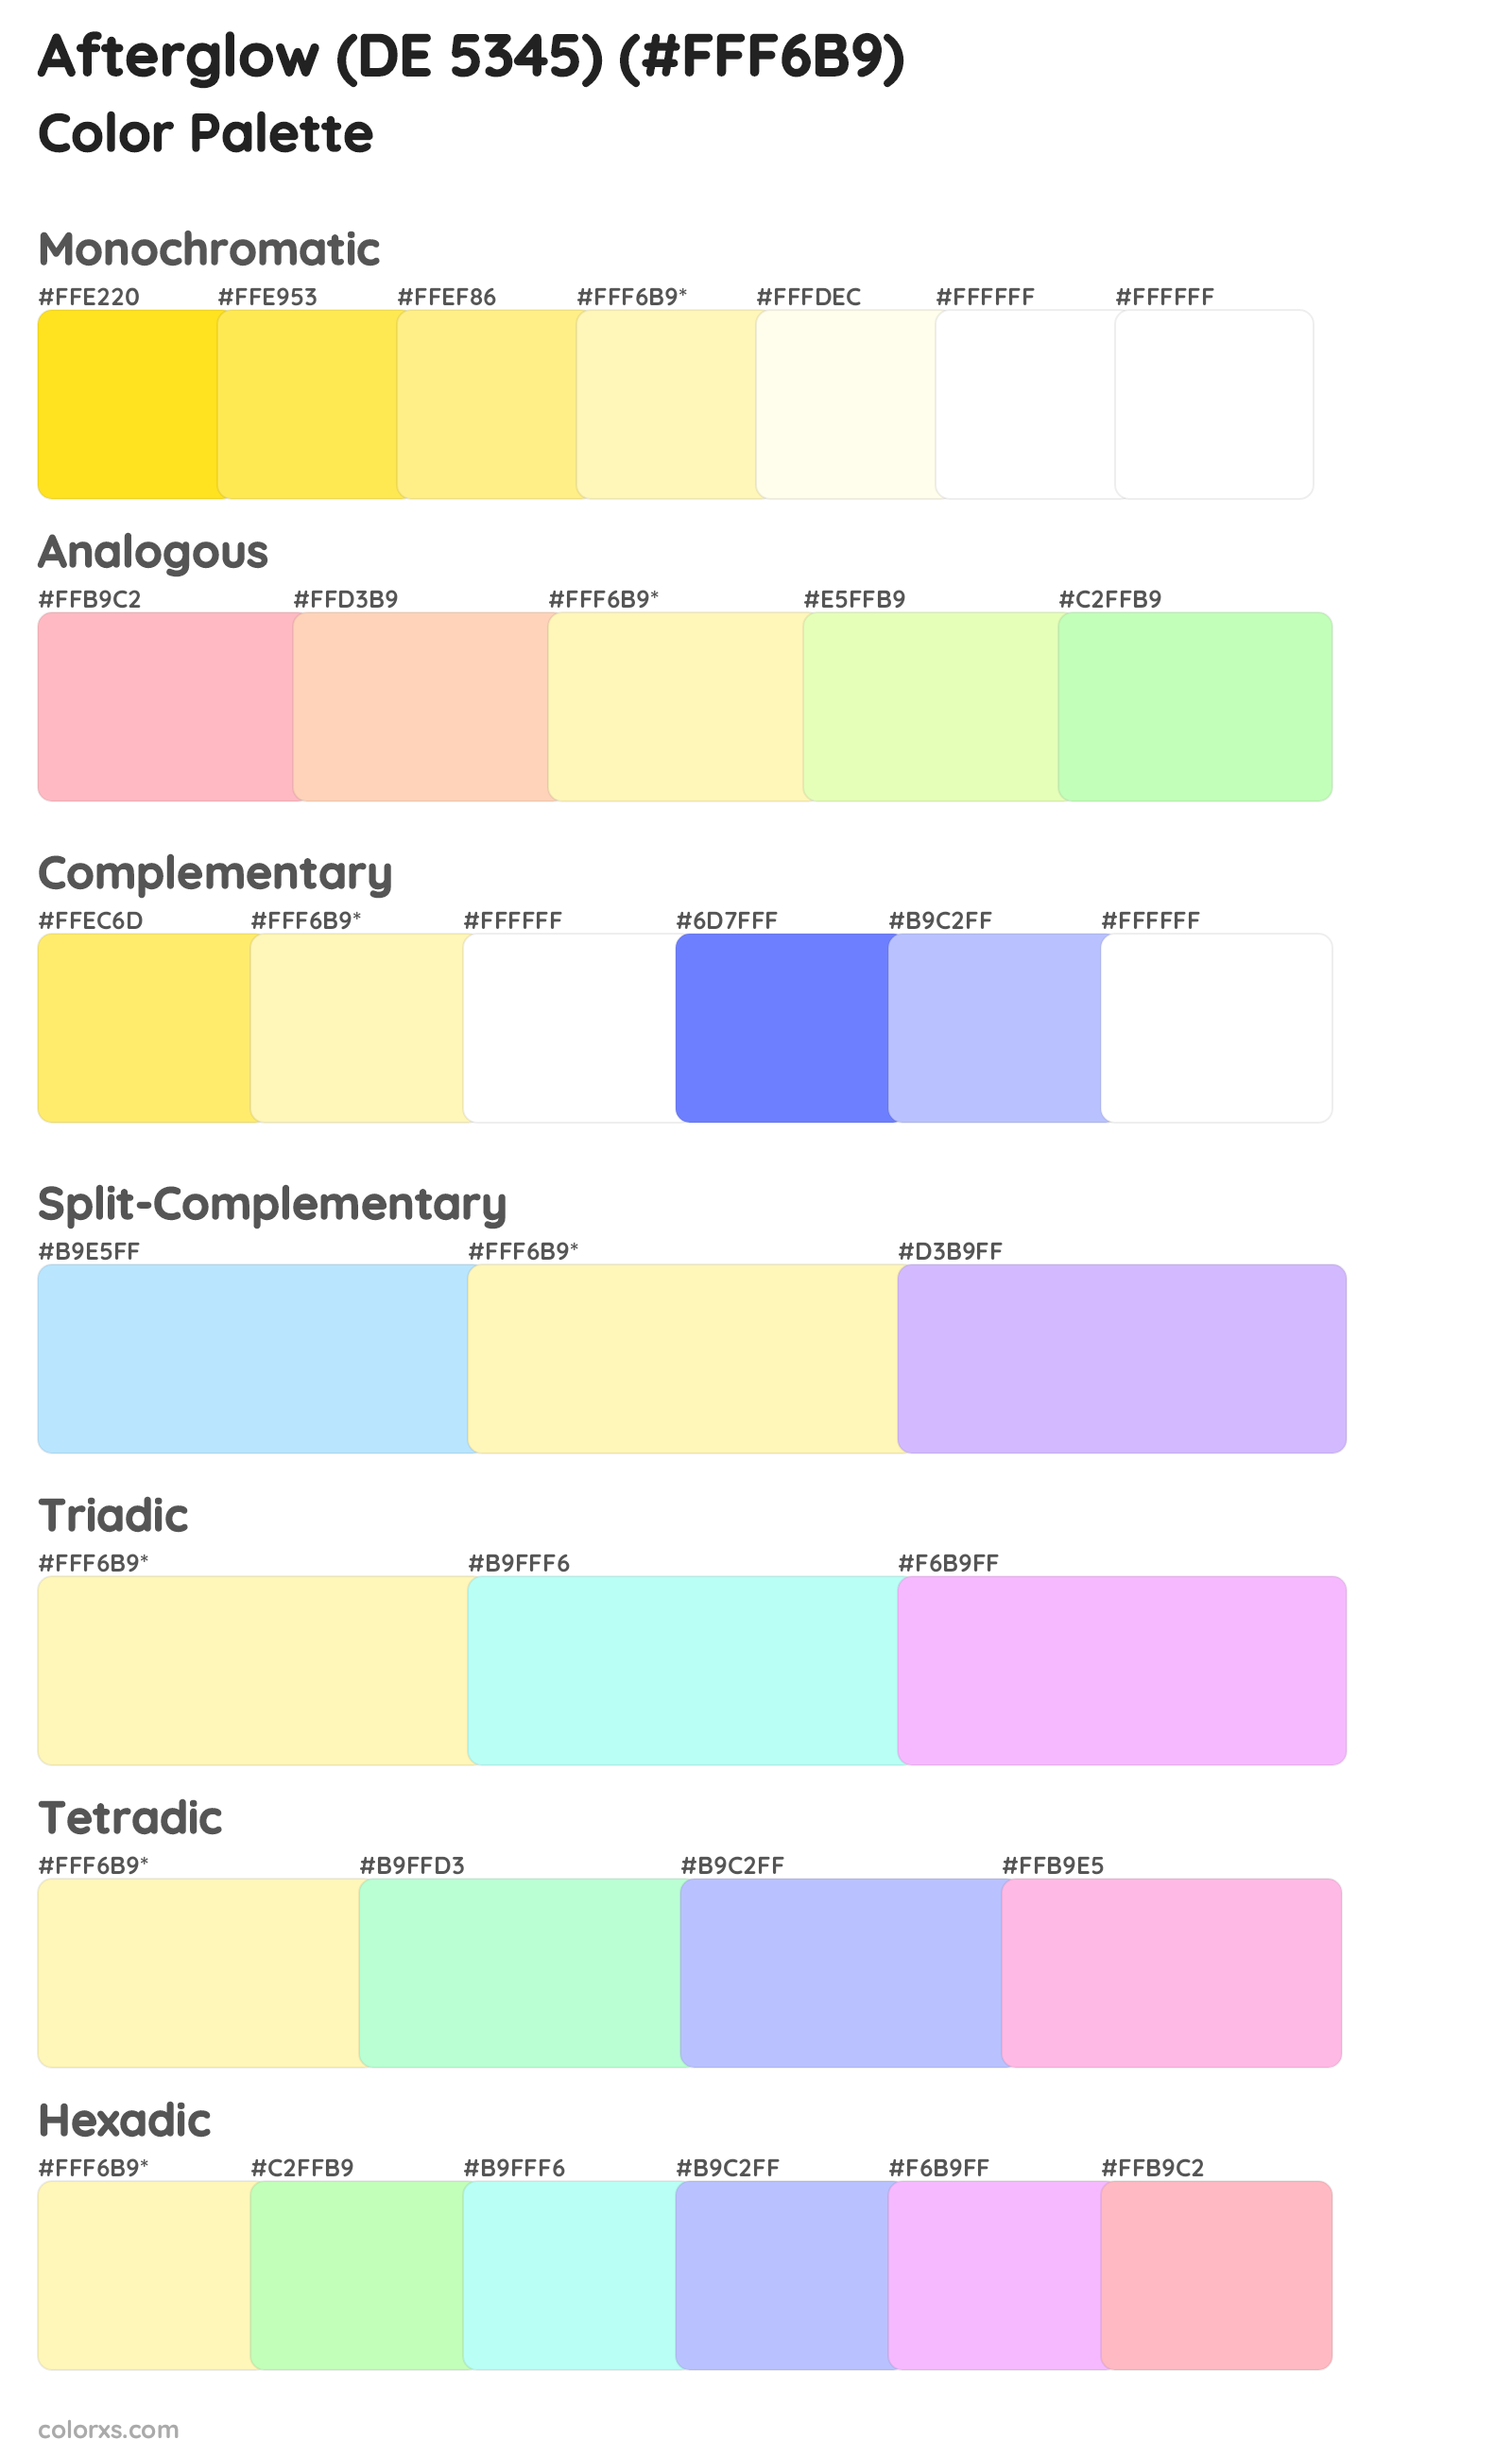 Afterglow (DE 5345) Color Scheme Palettes